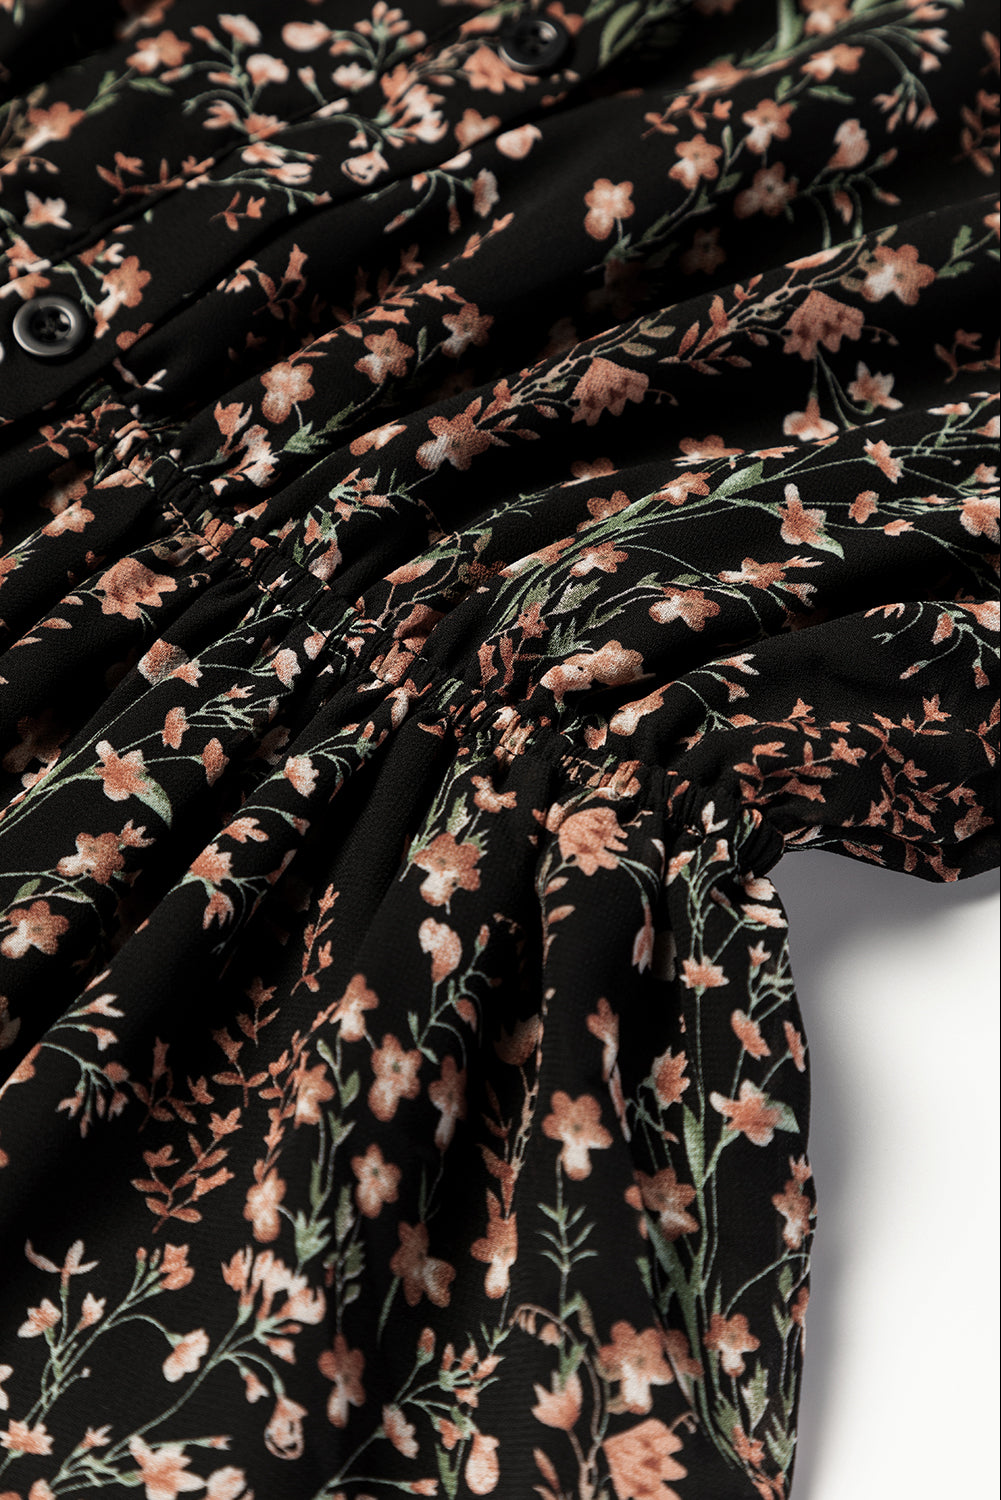 Schwarzes Minikleid mit Blumendruck, V-Ausschnitt, Rüschen und Puffärmeln